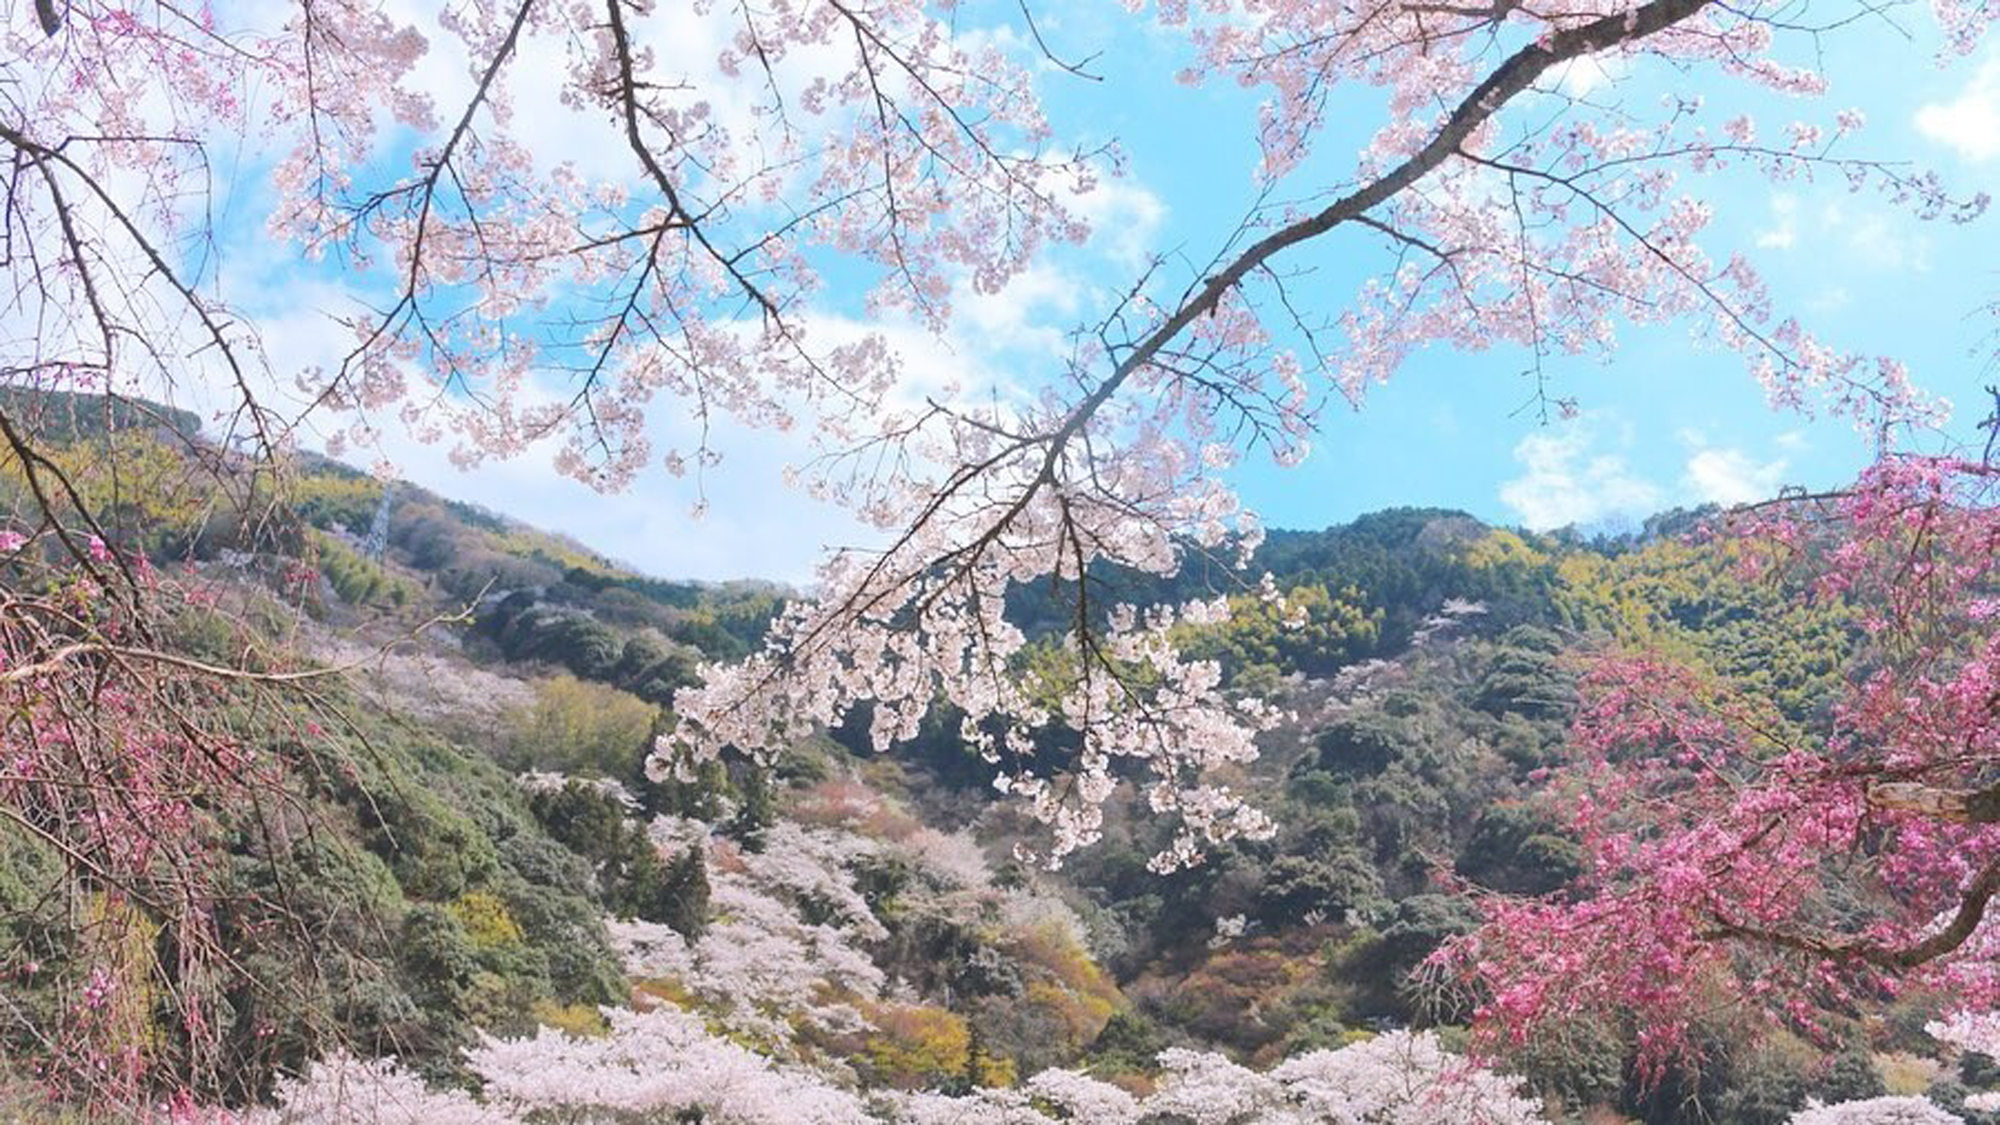 【春】敷地内の桜の木は約3000本！色鮮やかなピンクや桃色に染まる桜景色をお楽しみ頂けます。